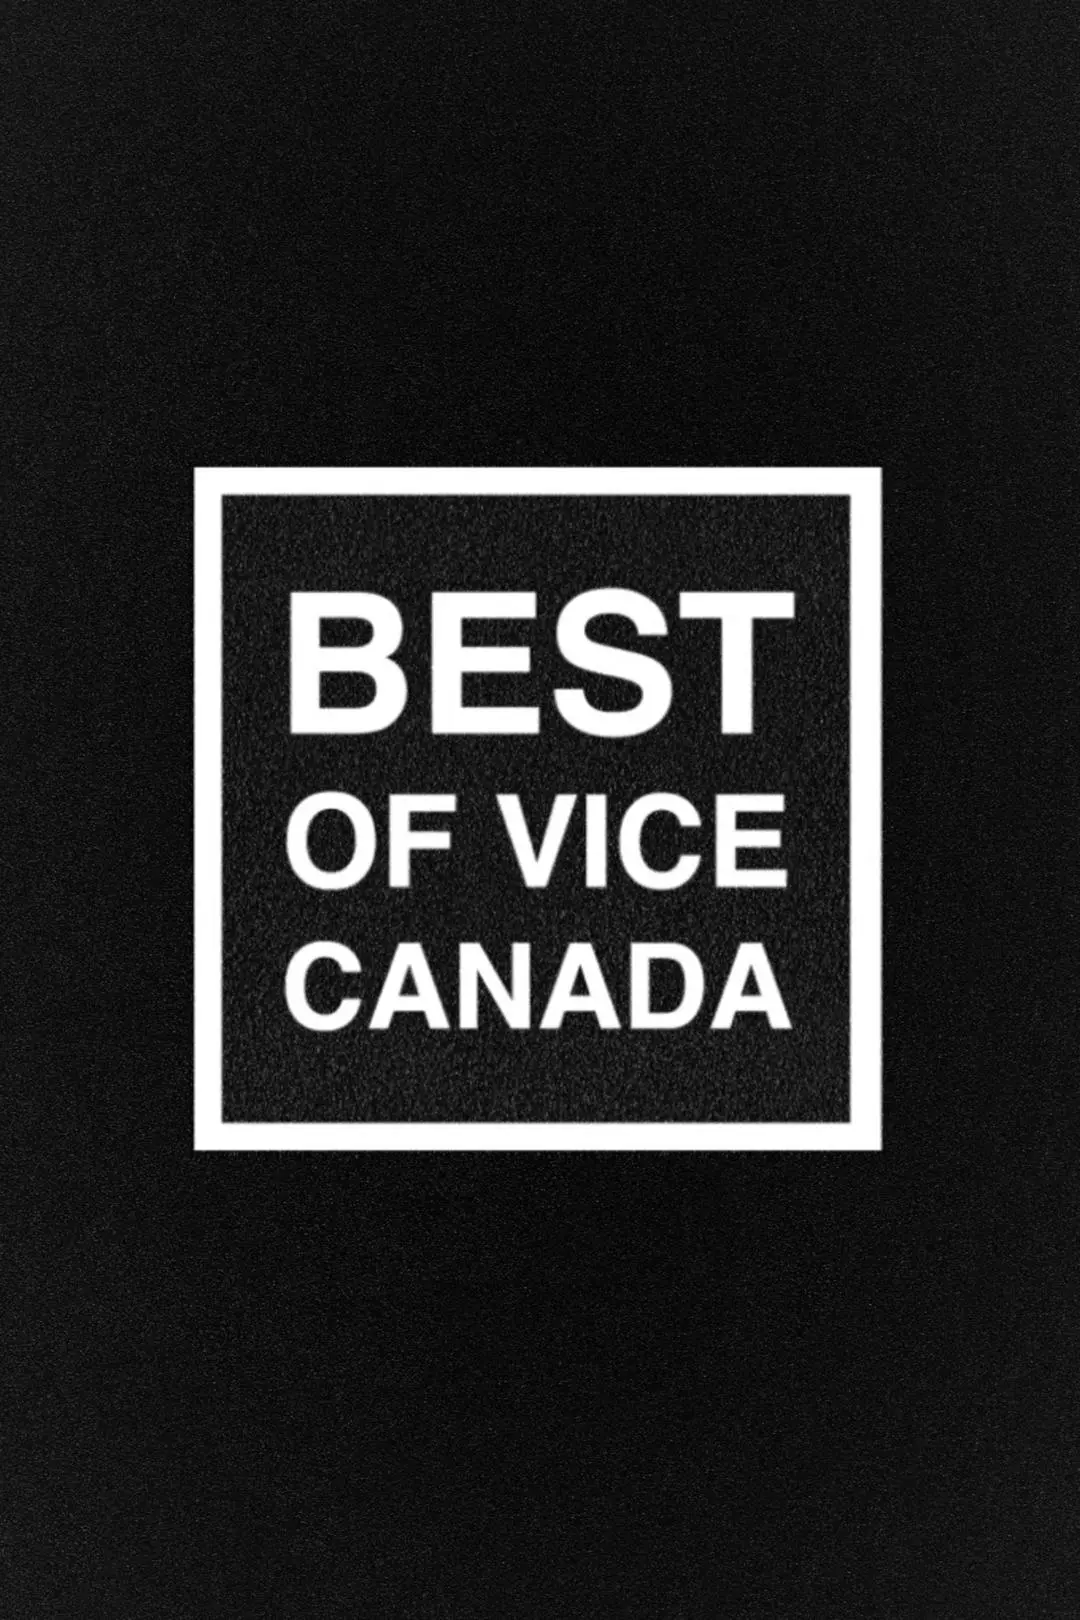 Best of VICE Canada_peliplat